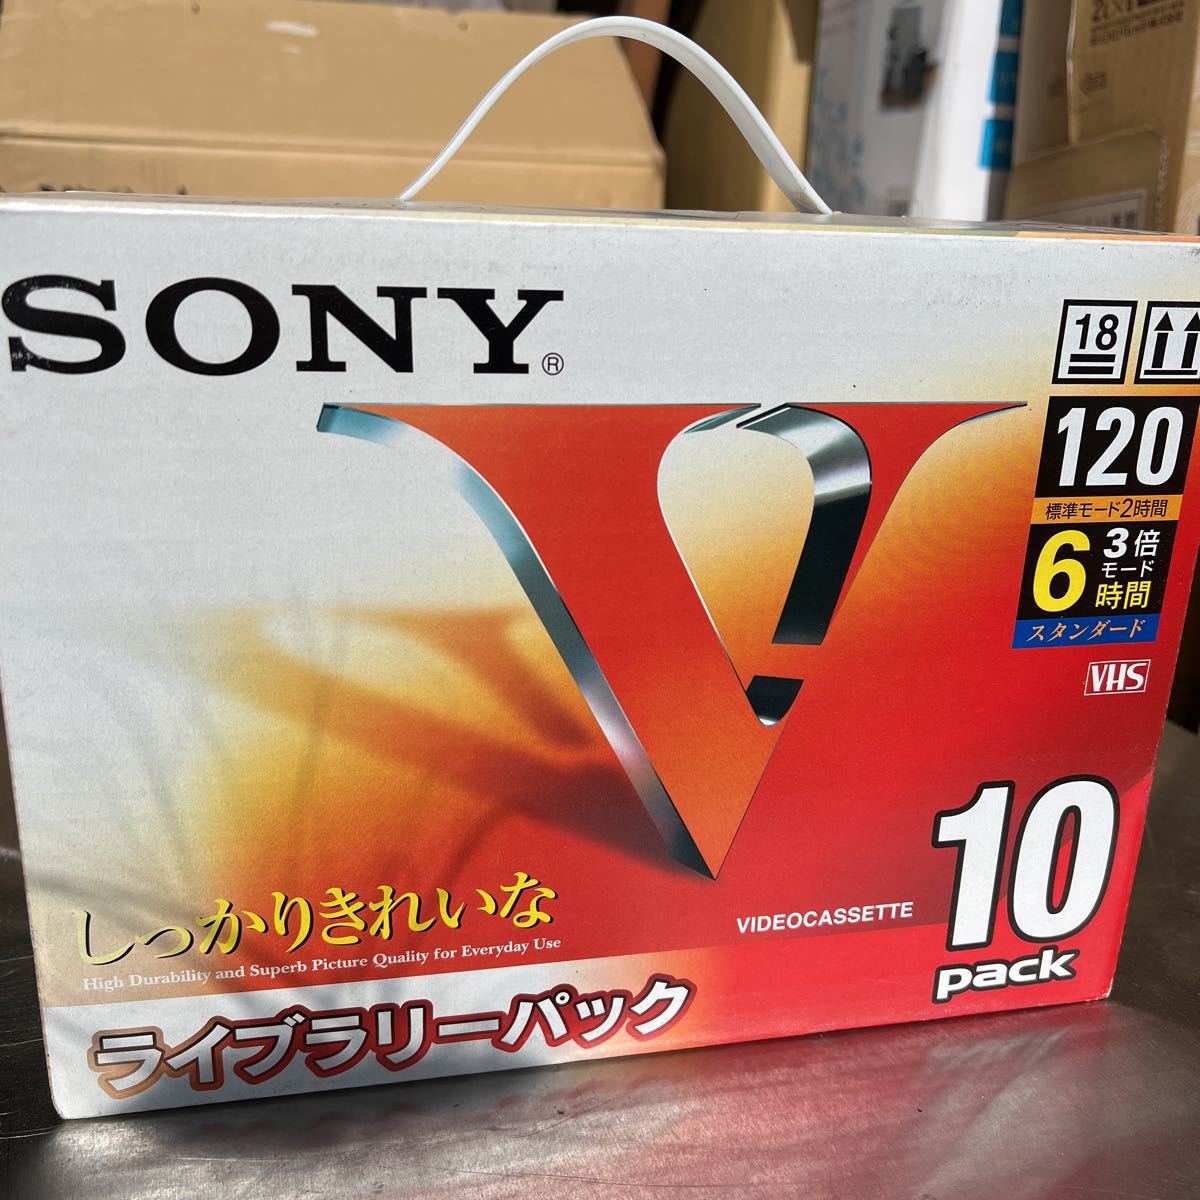 SONY ビデオテープ ライブラリーパック10パック 未使用 VHS ソニー